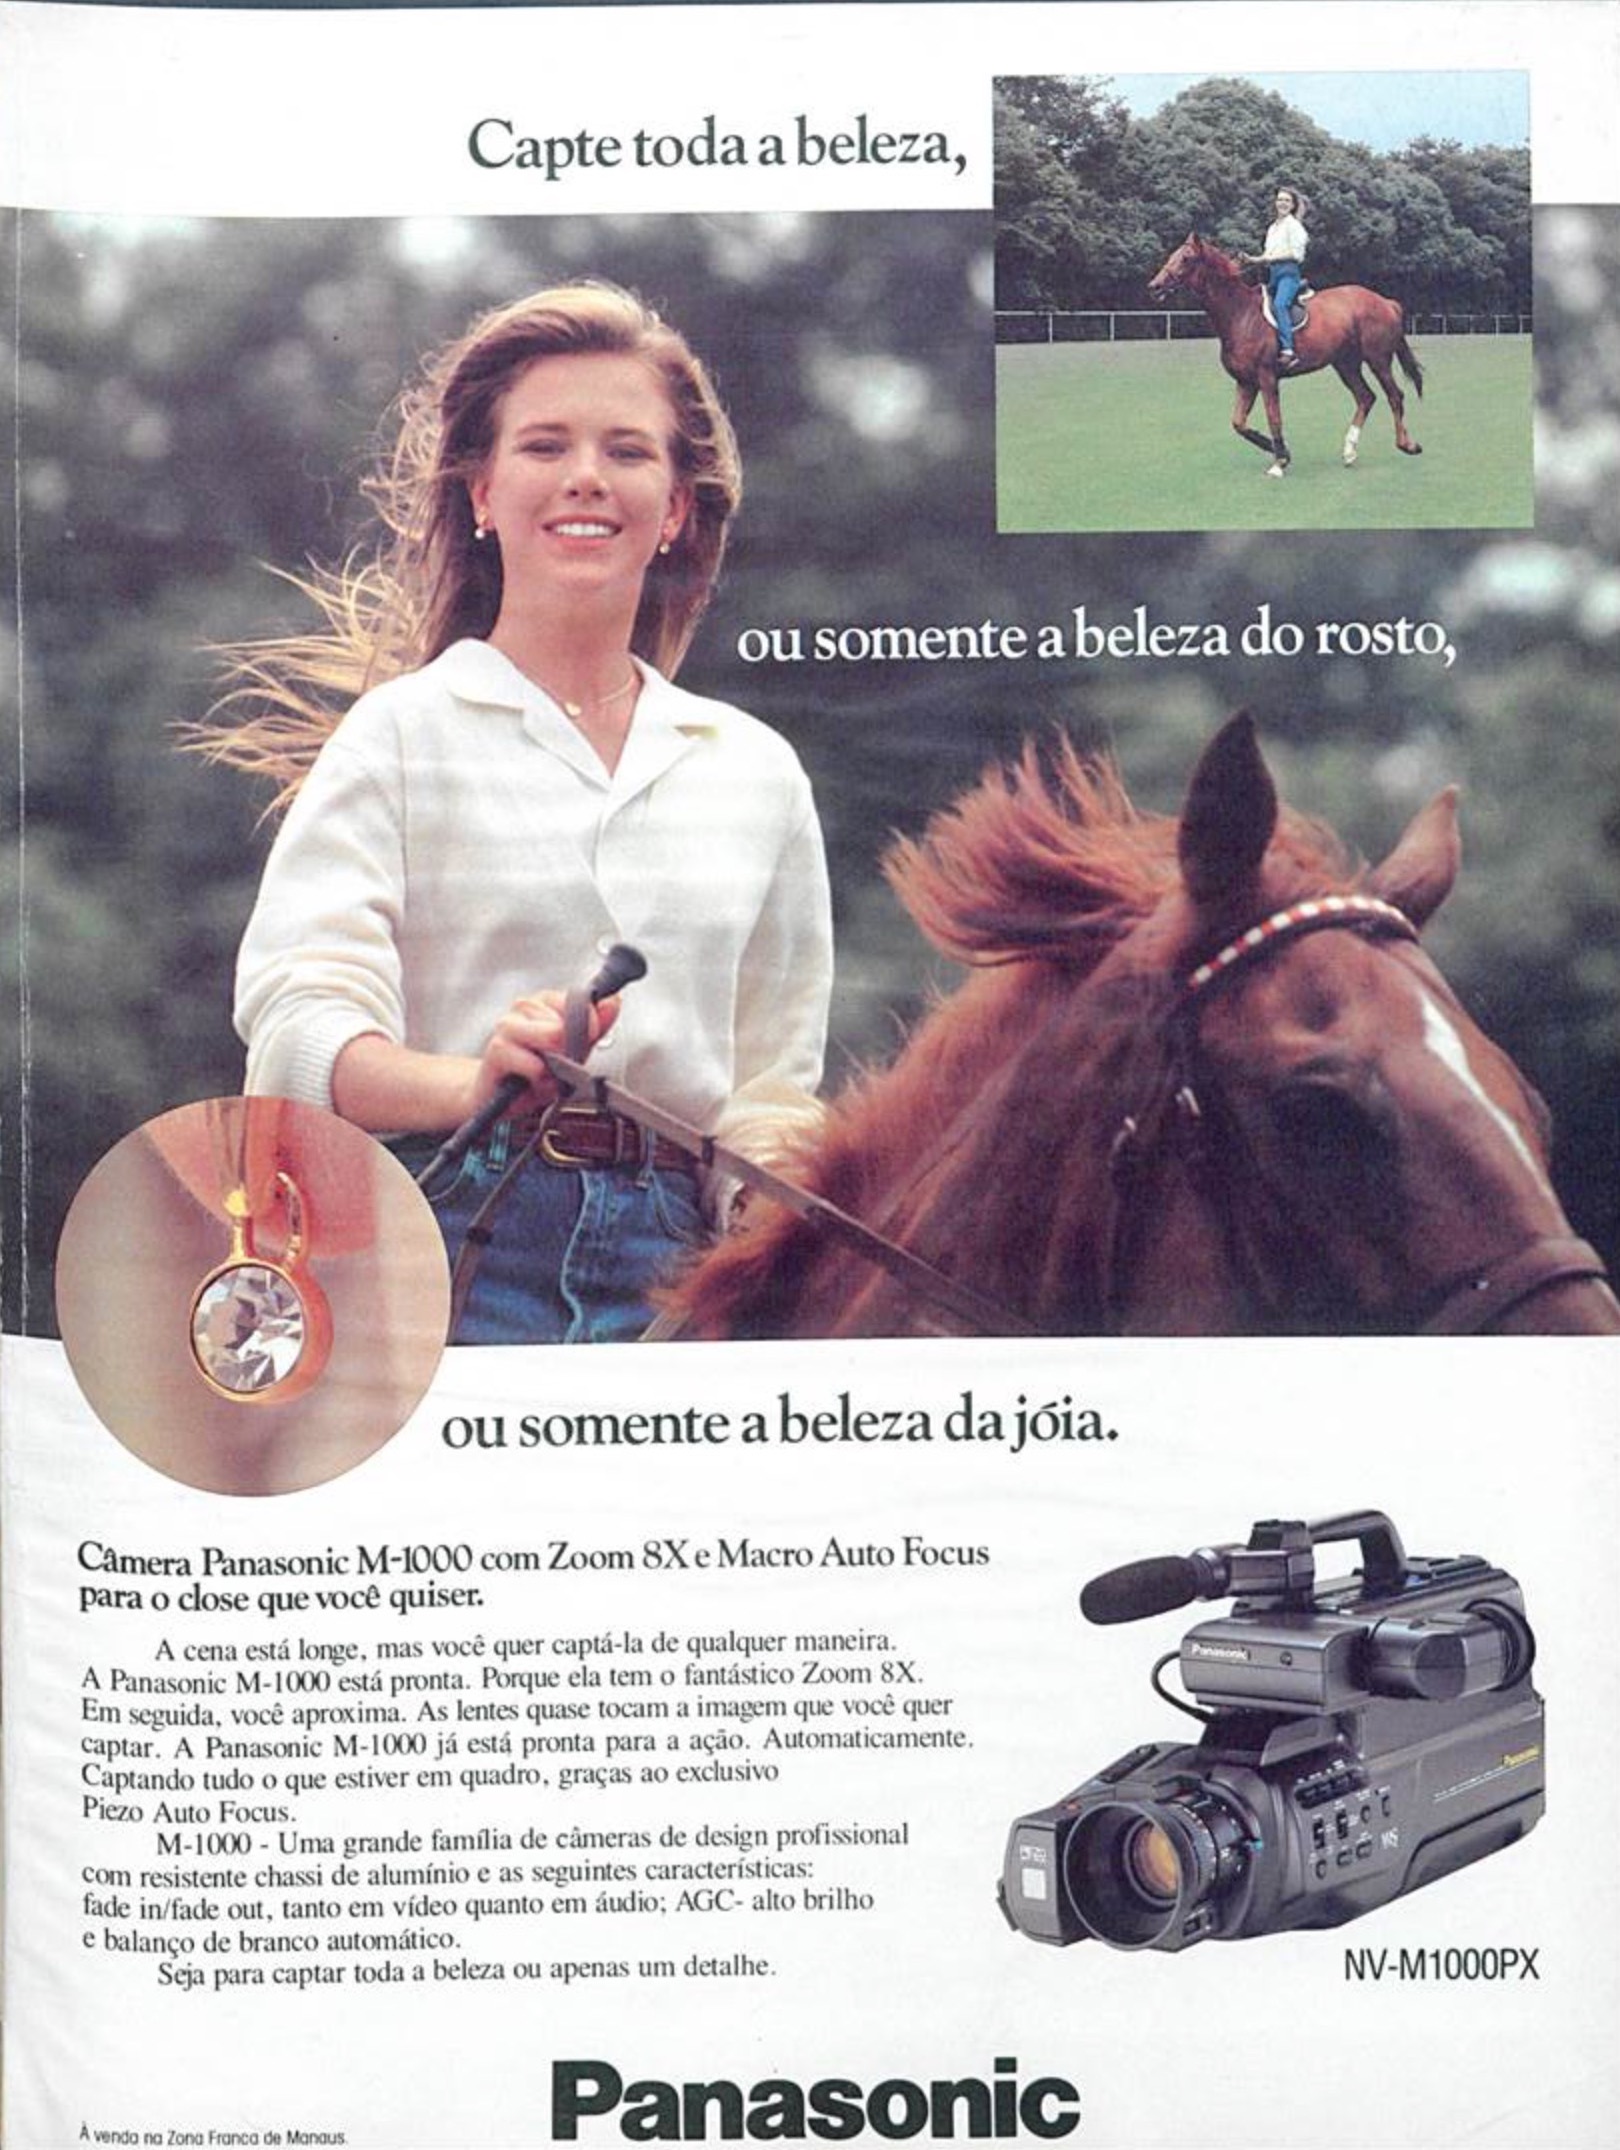 Campanha da Panasonic promovendo seu novo modelo de câmera em 1990